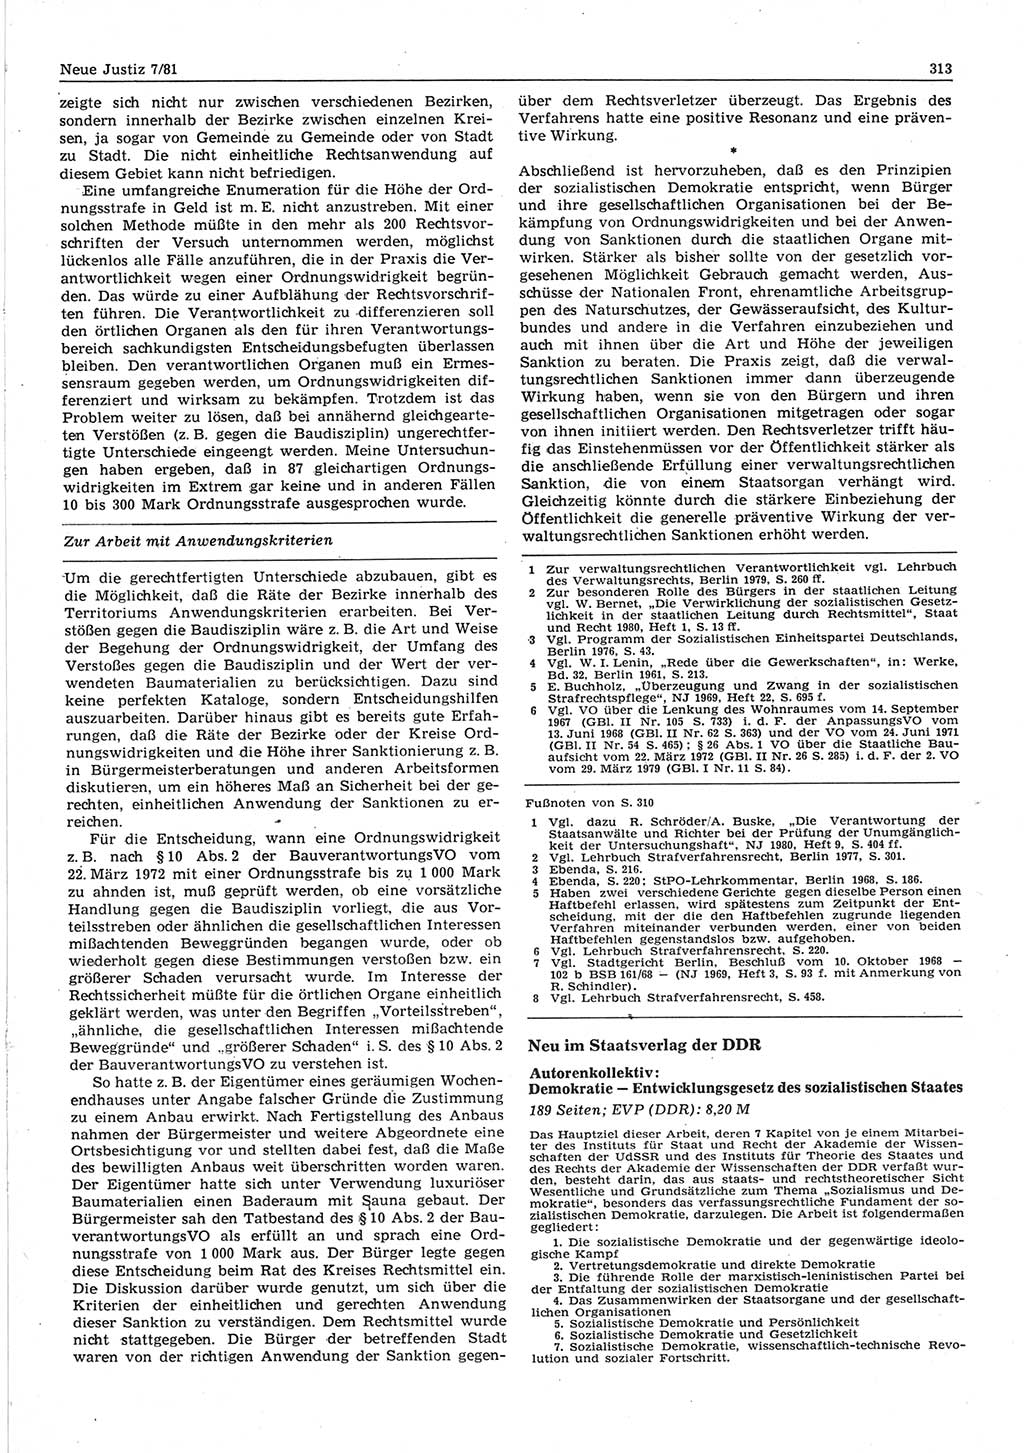 Neue Justiz (NJ), Zeitschrift für sozialistisches Recht und Gesetzlichkeit [Deutsche Demokratische Republik (DDR)], 35. Jahrgang 1981, Seite 313 (NJ DDR 1981, S. 313)